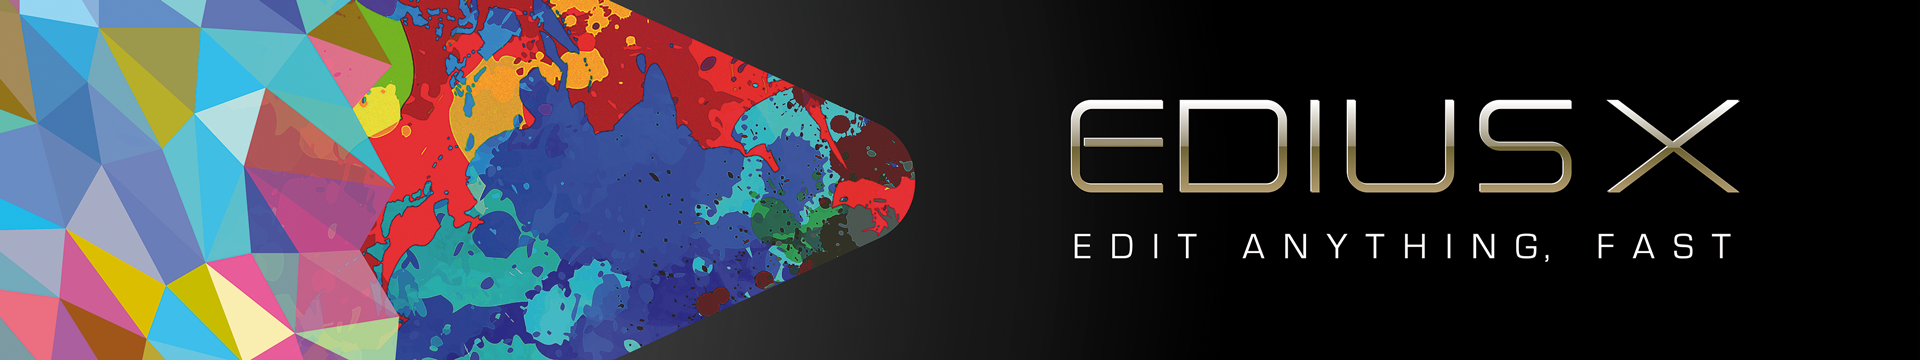 EDIUS X Logo, Wedding Project, EDIUS X Project, EDIUS X Buy, EDIUS 10 buy, Edius 10 price